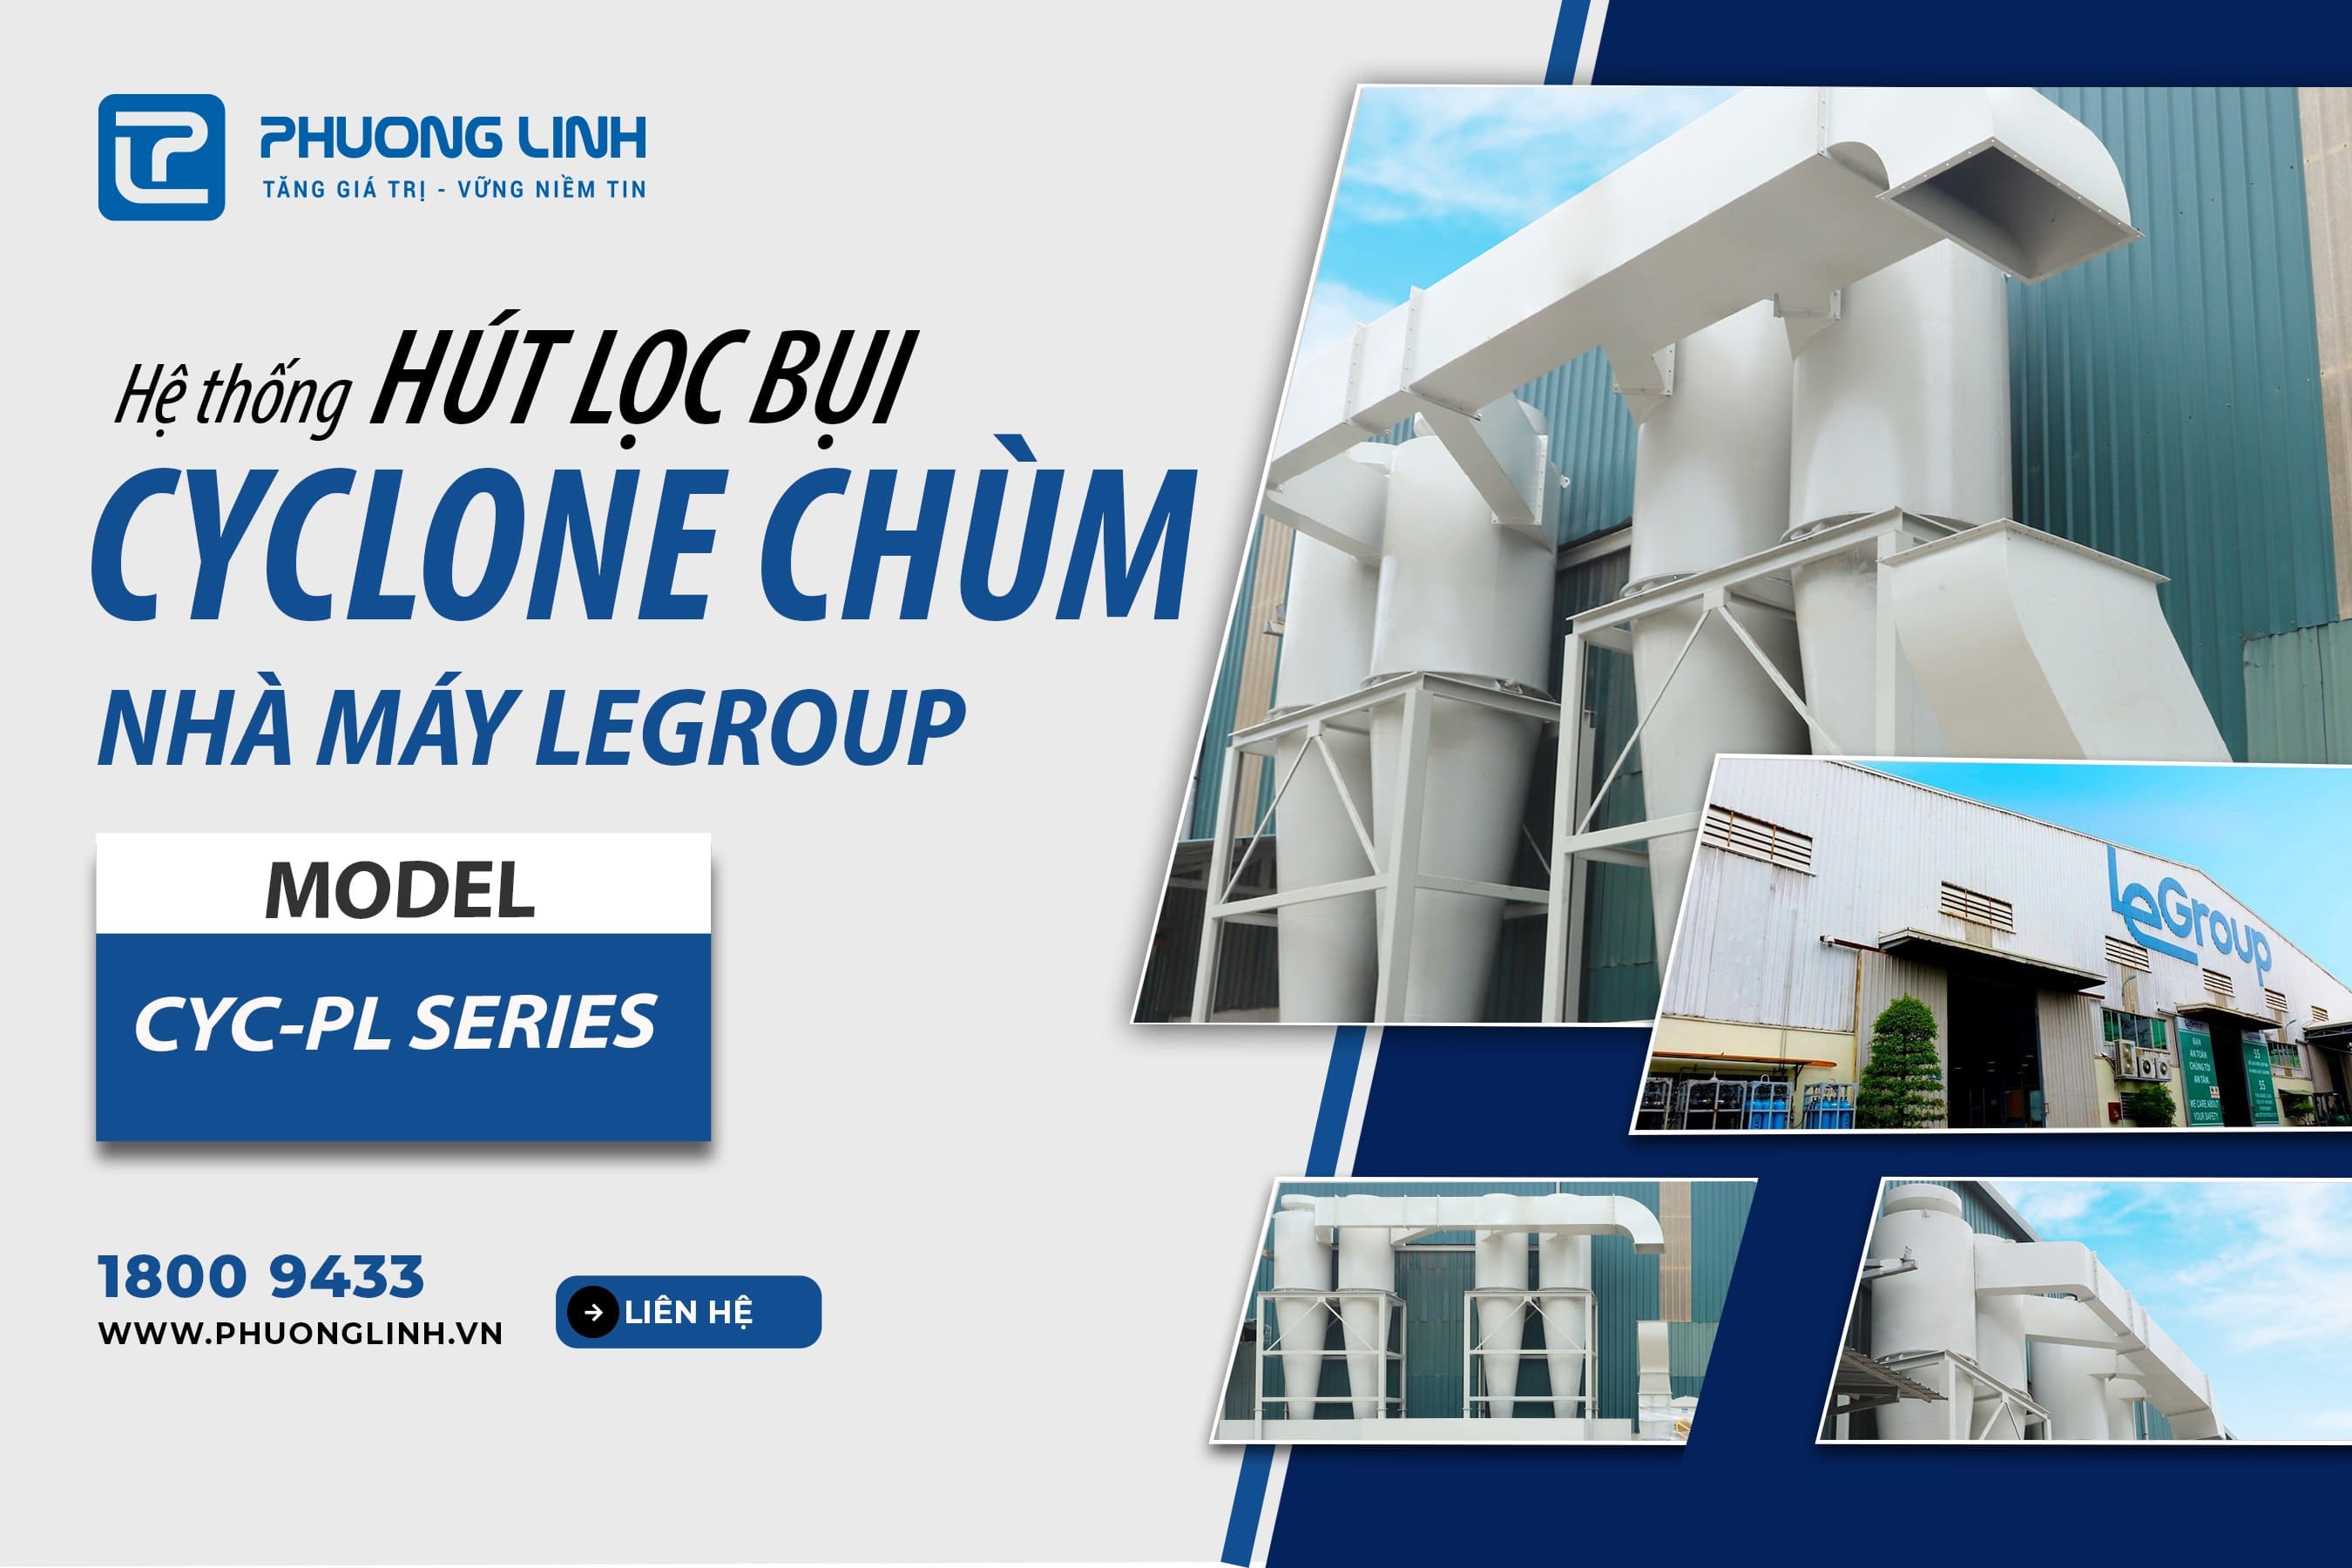 7 lý do LeGroup lựa chọn Hệ thống Hút lọc bụi Cyclone chùm CYC-PL Series từ Phương Linh